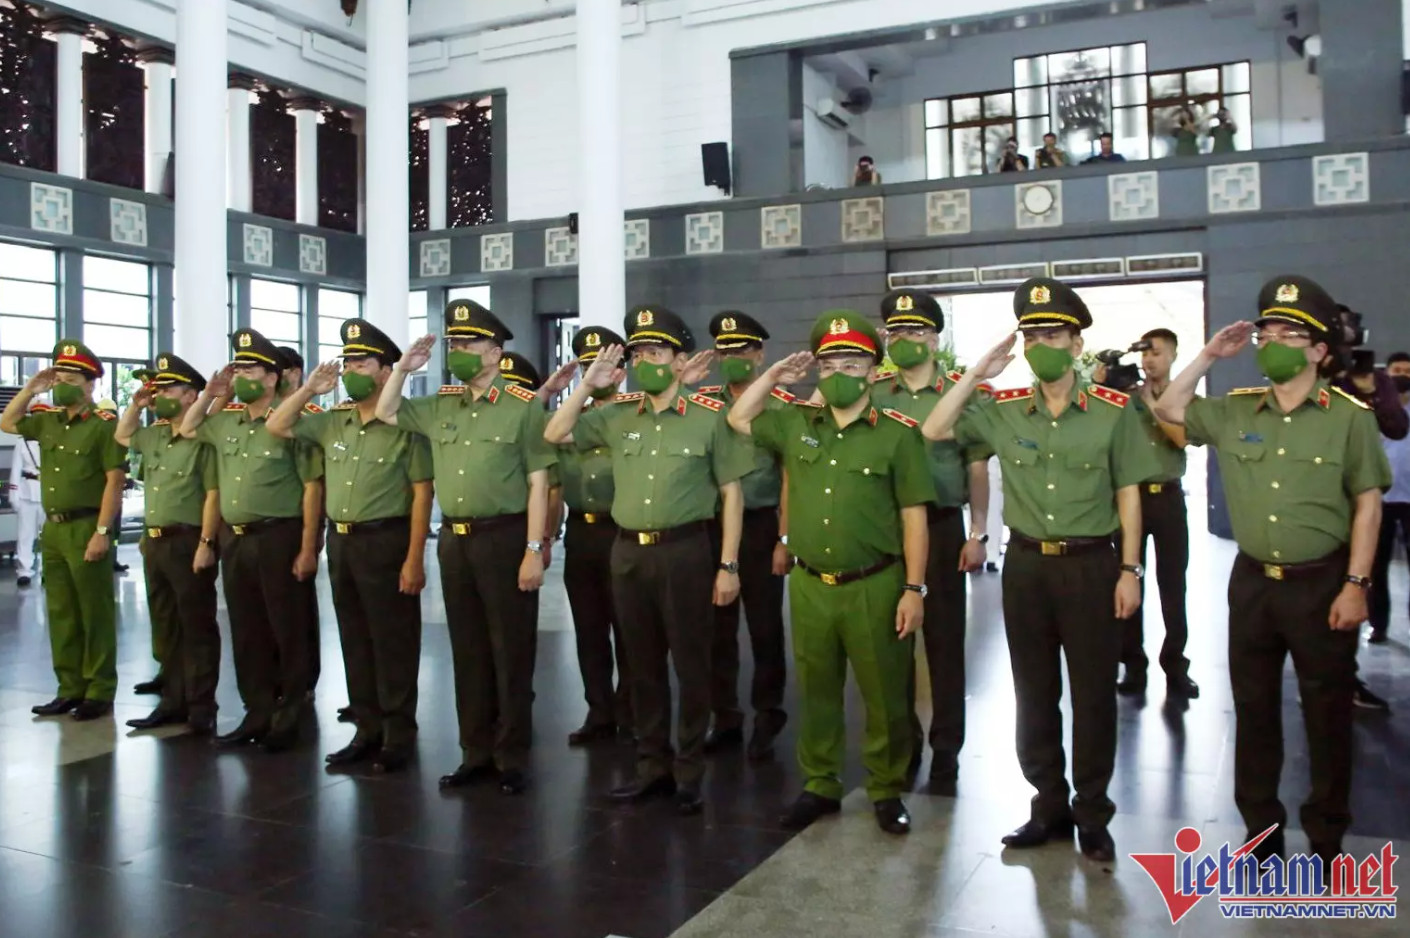 Đoàn Bộ Công an do Đại tướng Tô Lâm, Bộ trưởng làm Trưởng đoàn viếng các liệt sĩ